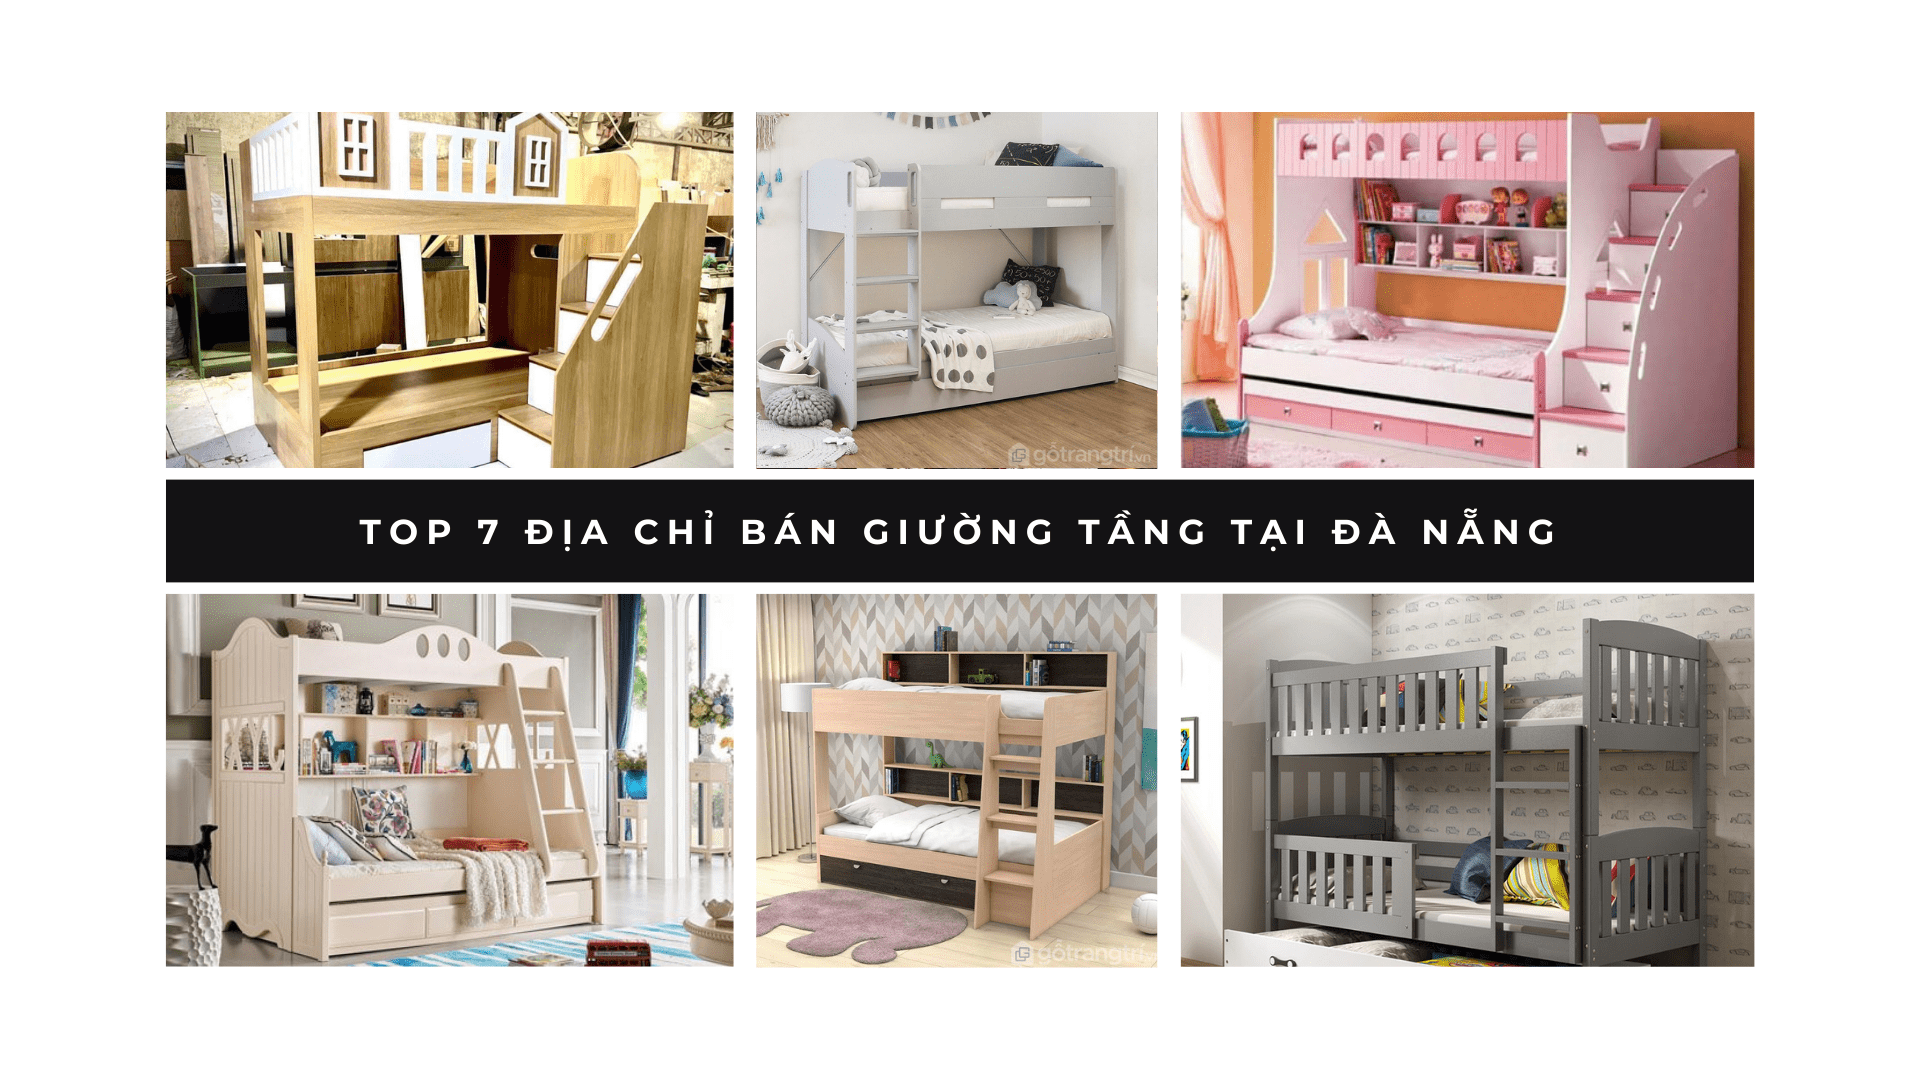 Top 7 địa chỉ bán giường tầng tại Đà Nẵng